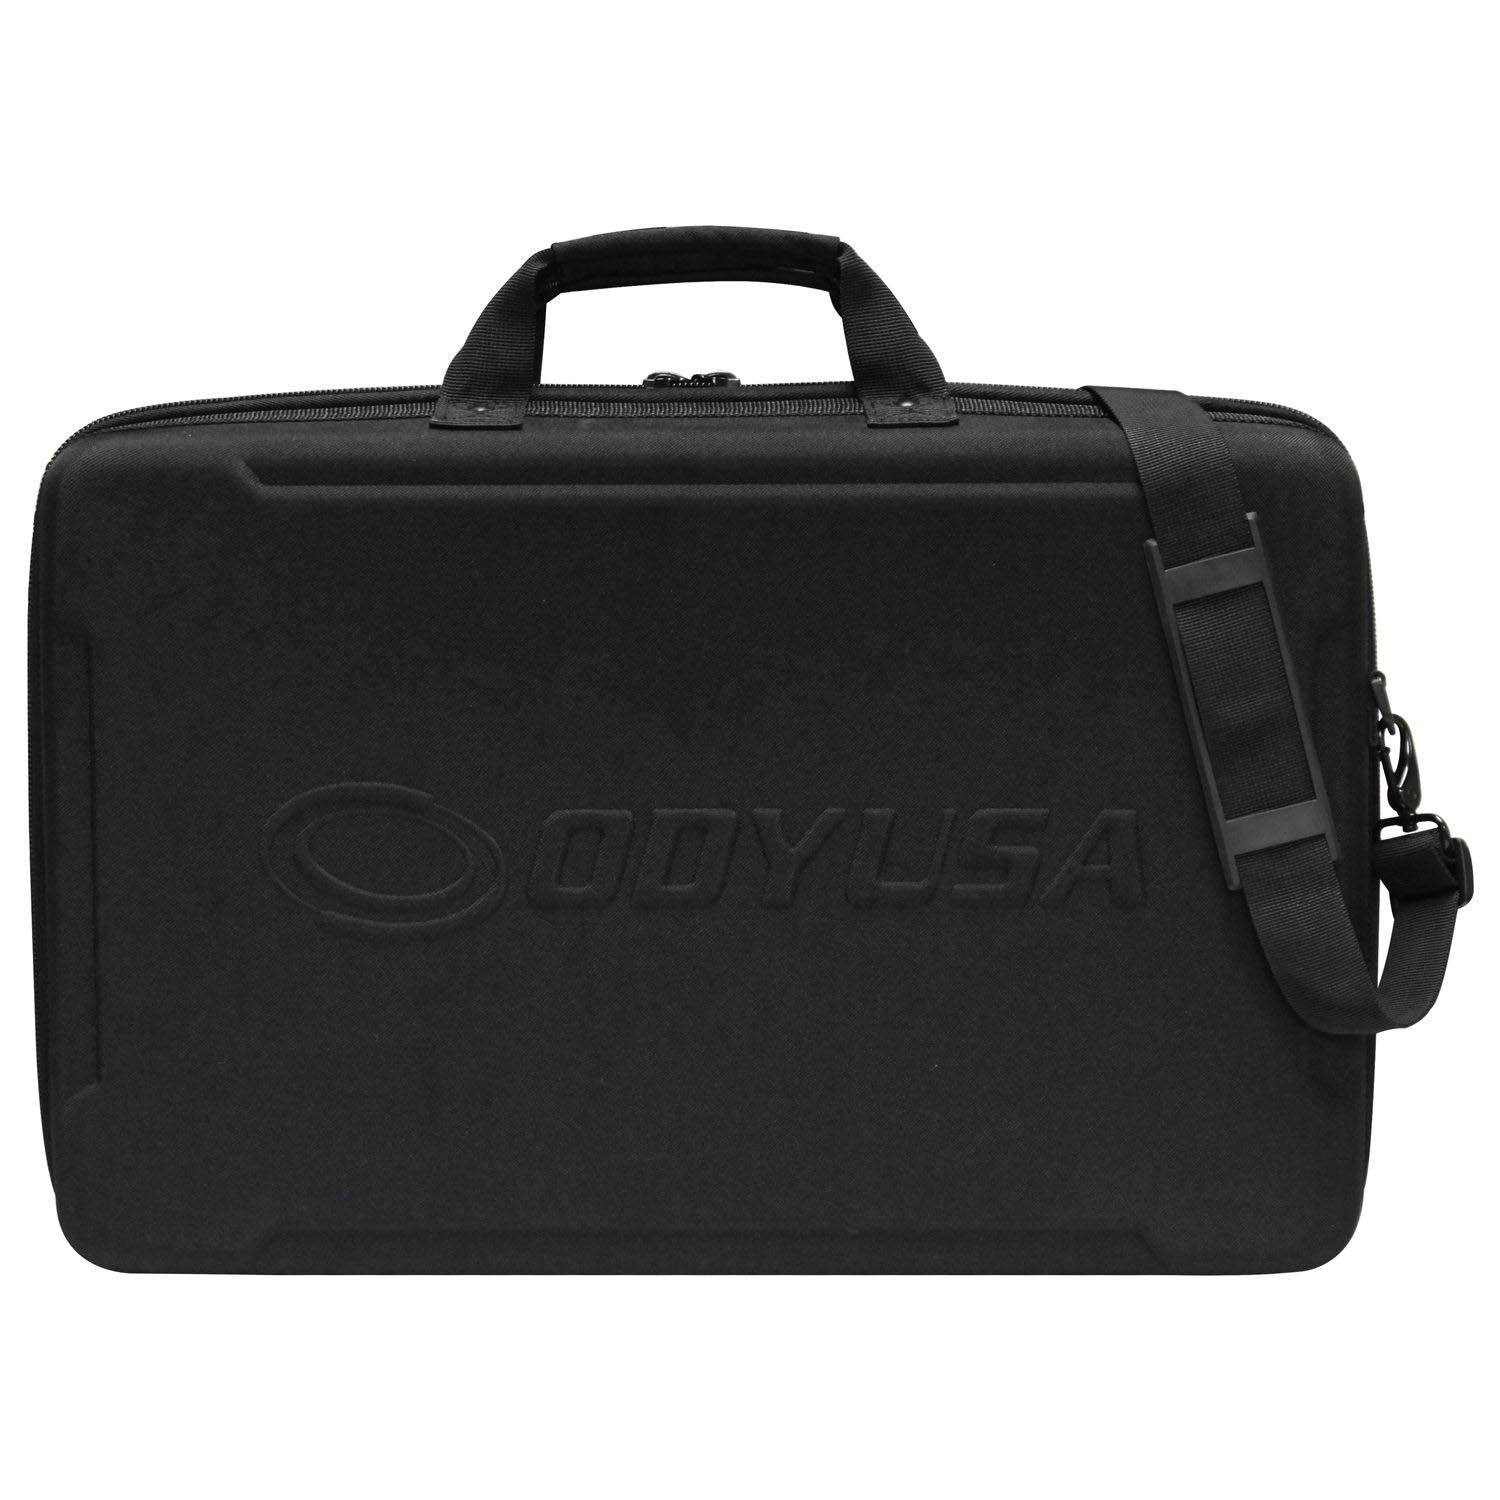 Odyssey BMSLTKS2MK3 EVA Molded Carrying Bag For Traktor S2 MK3 DJ Controller - Hollywood DJ